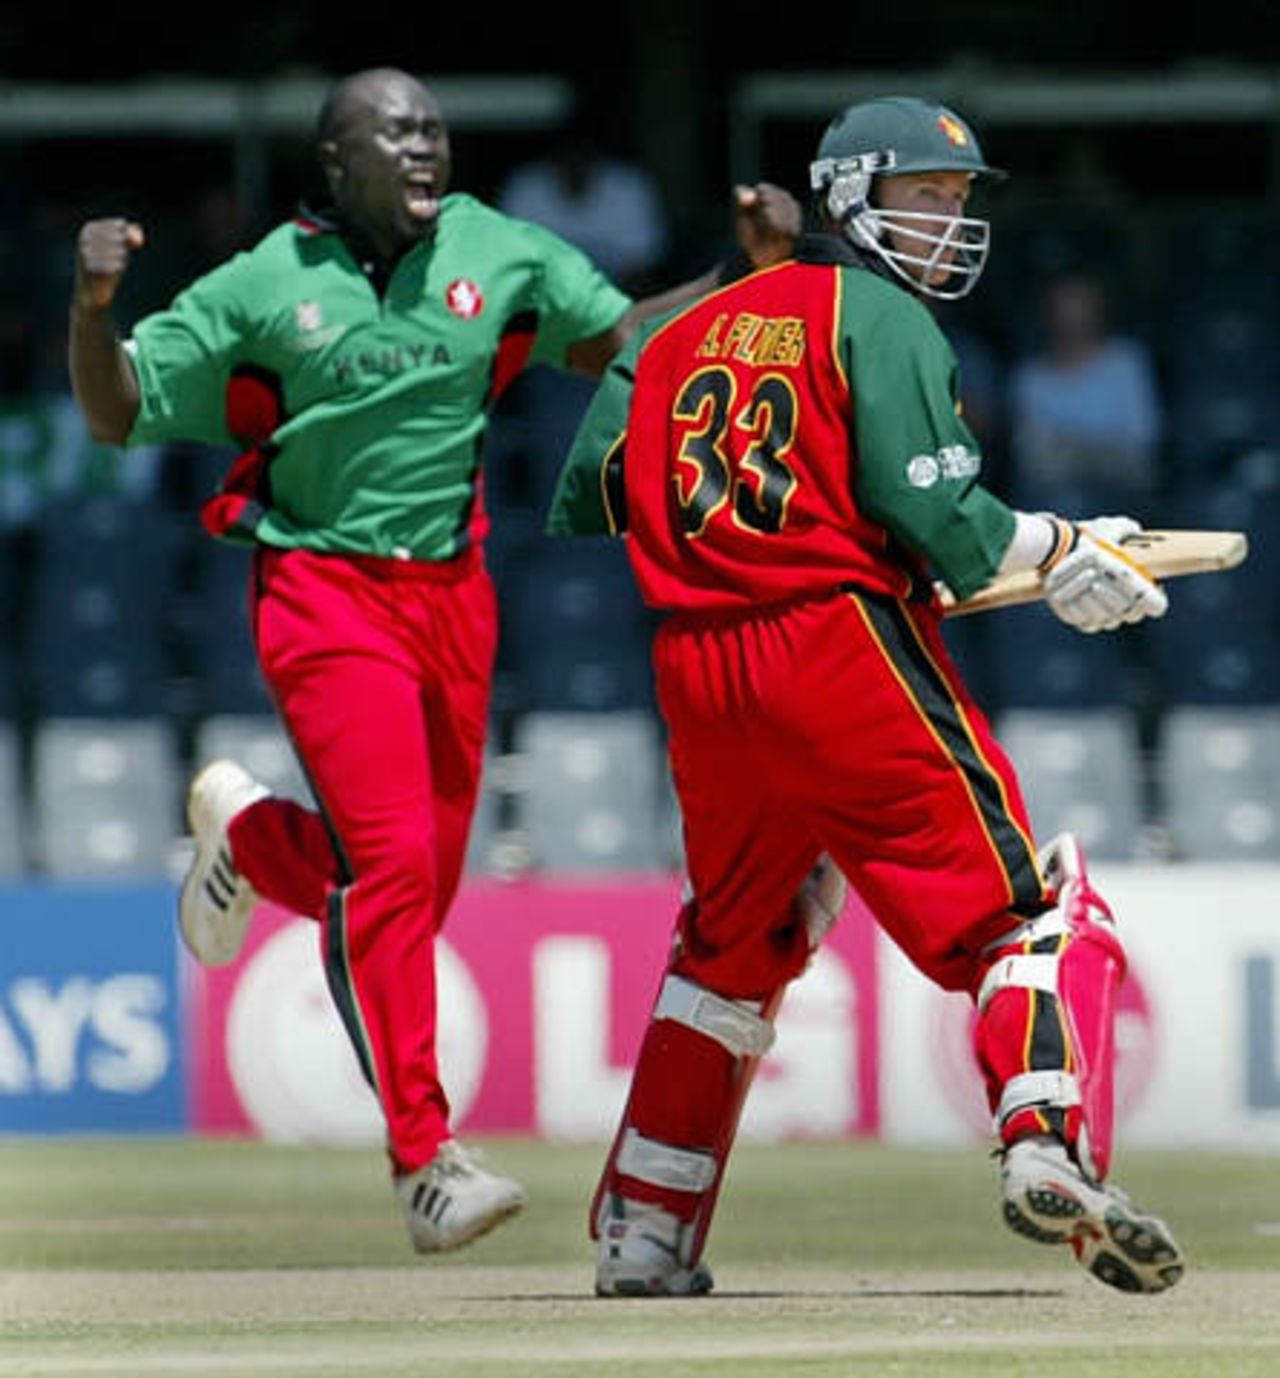 World Cup 2003 - Kenya v Zimbabwe at Bloemfontein, 12th March 2003